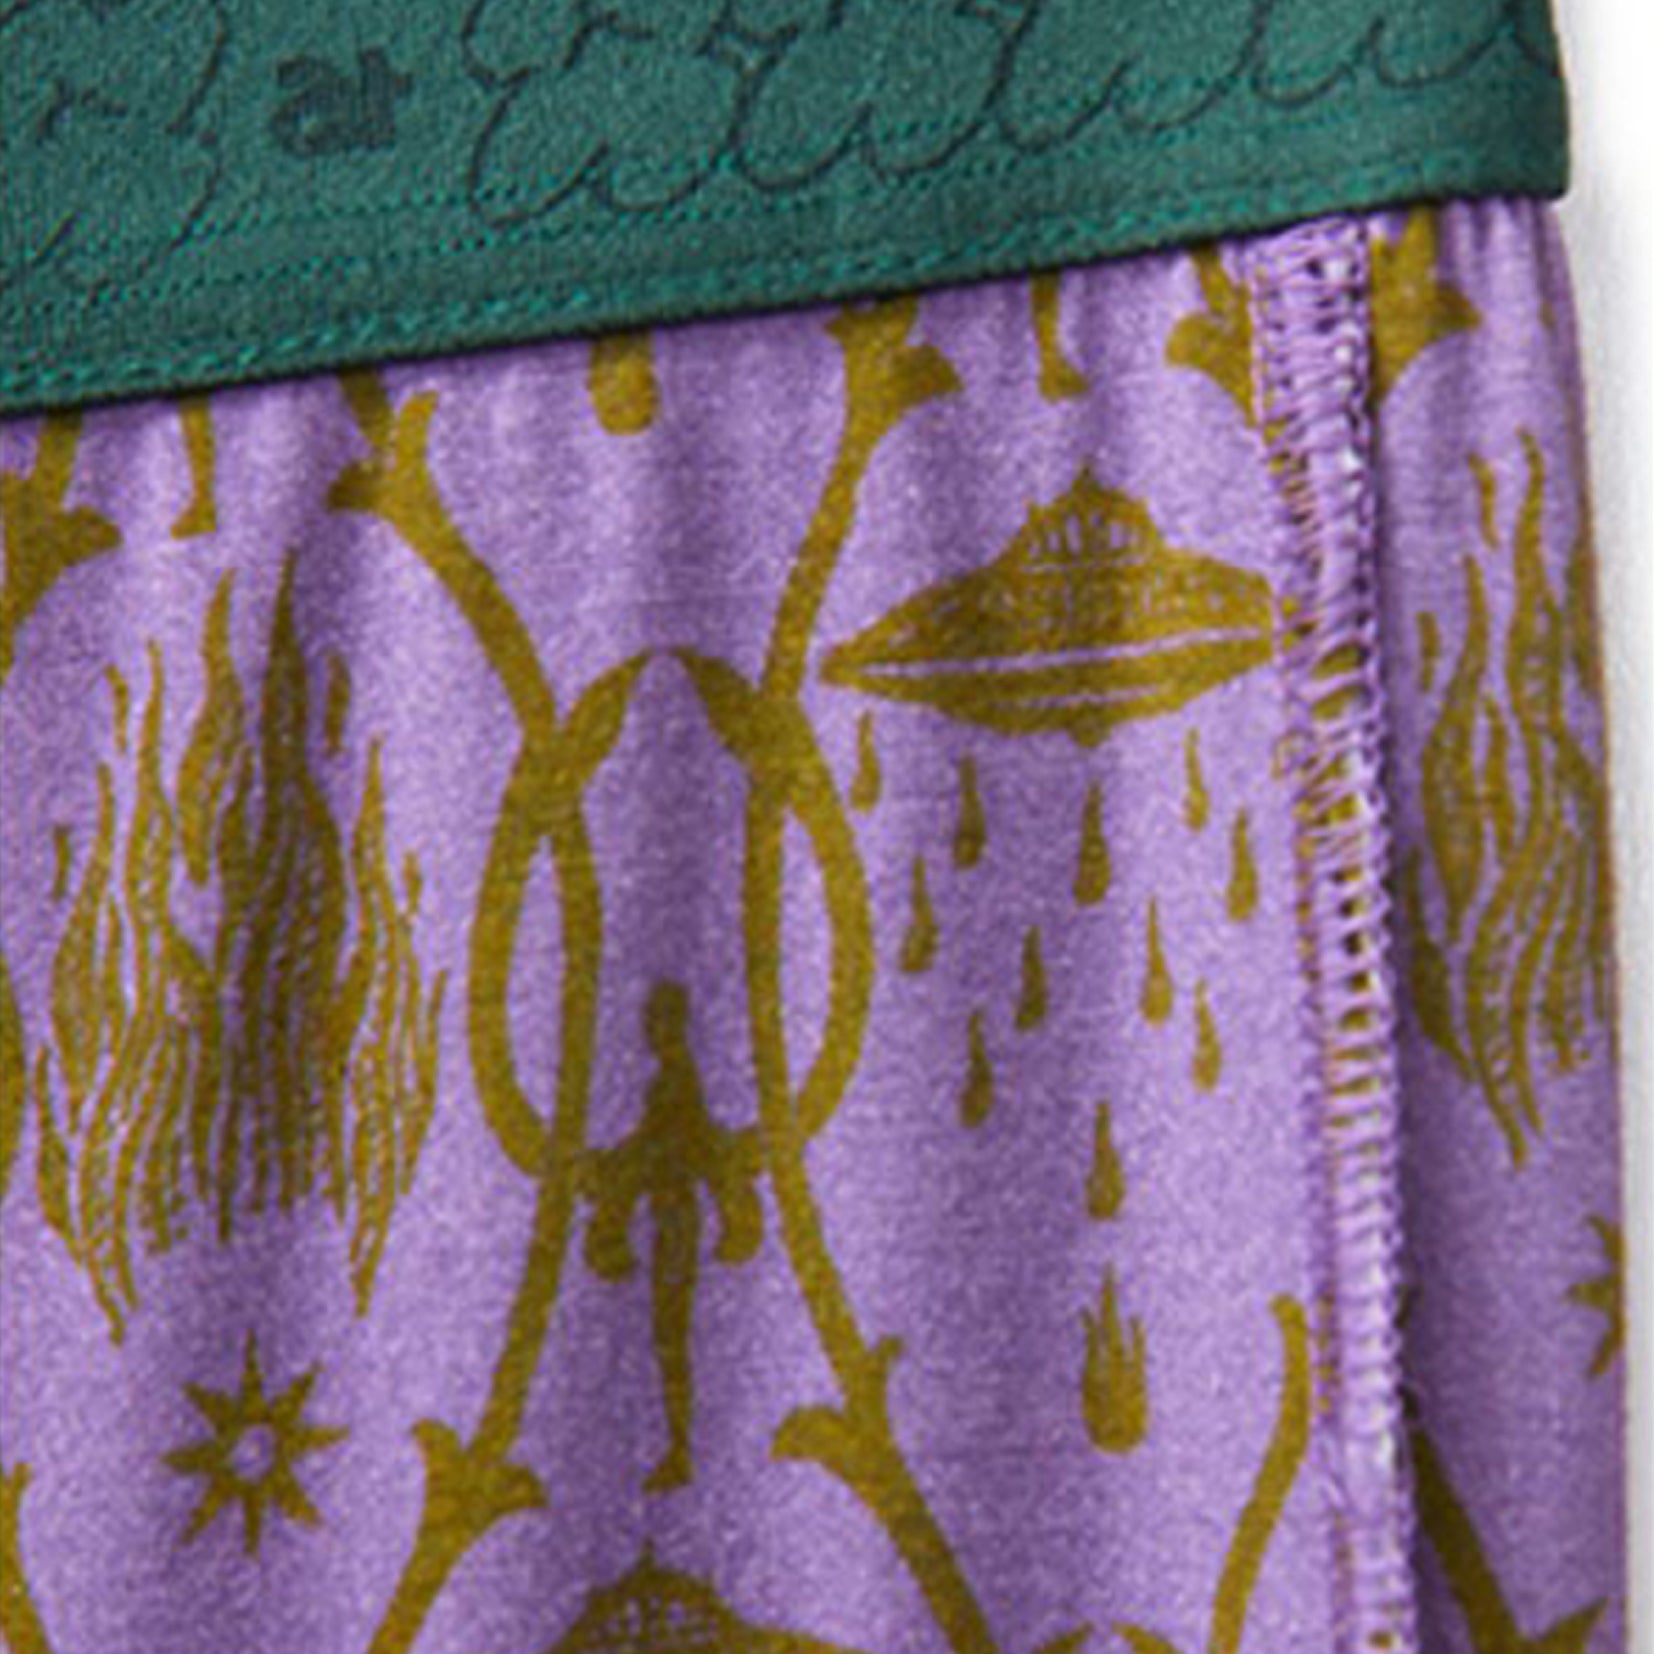 Vine print underwear suit in lilac